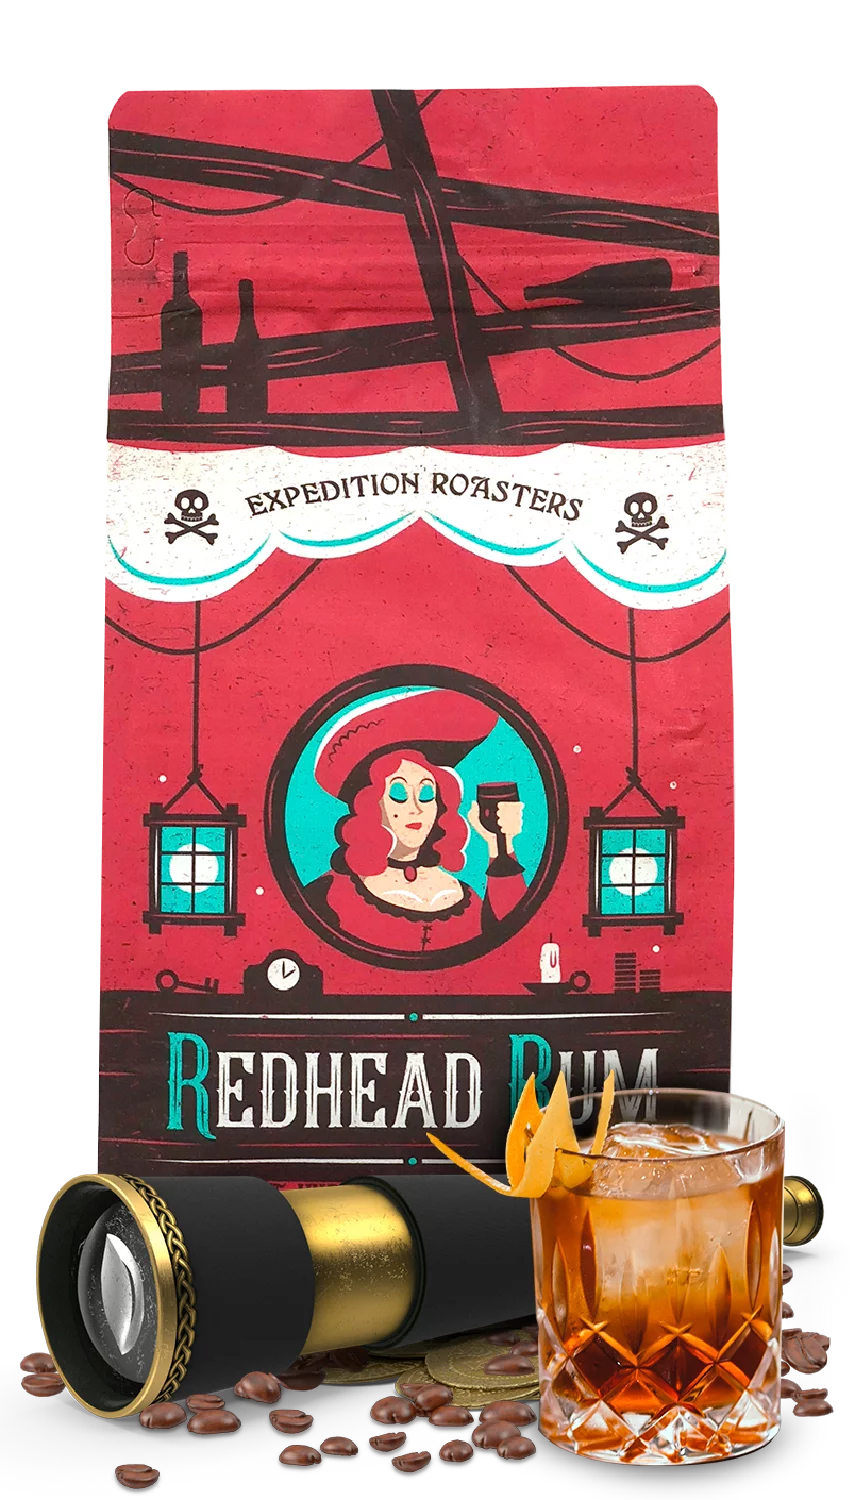 Redhead Rum